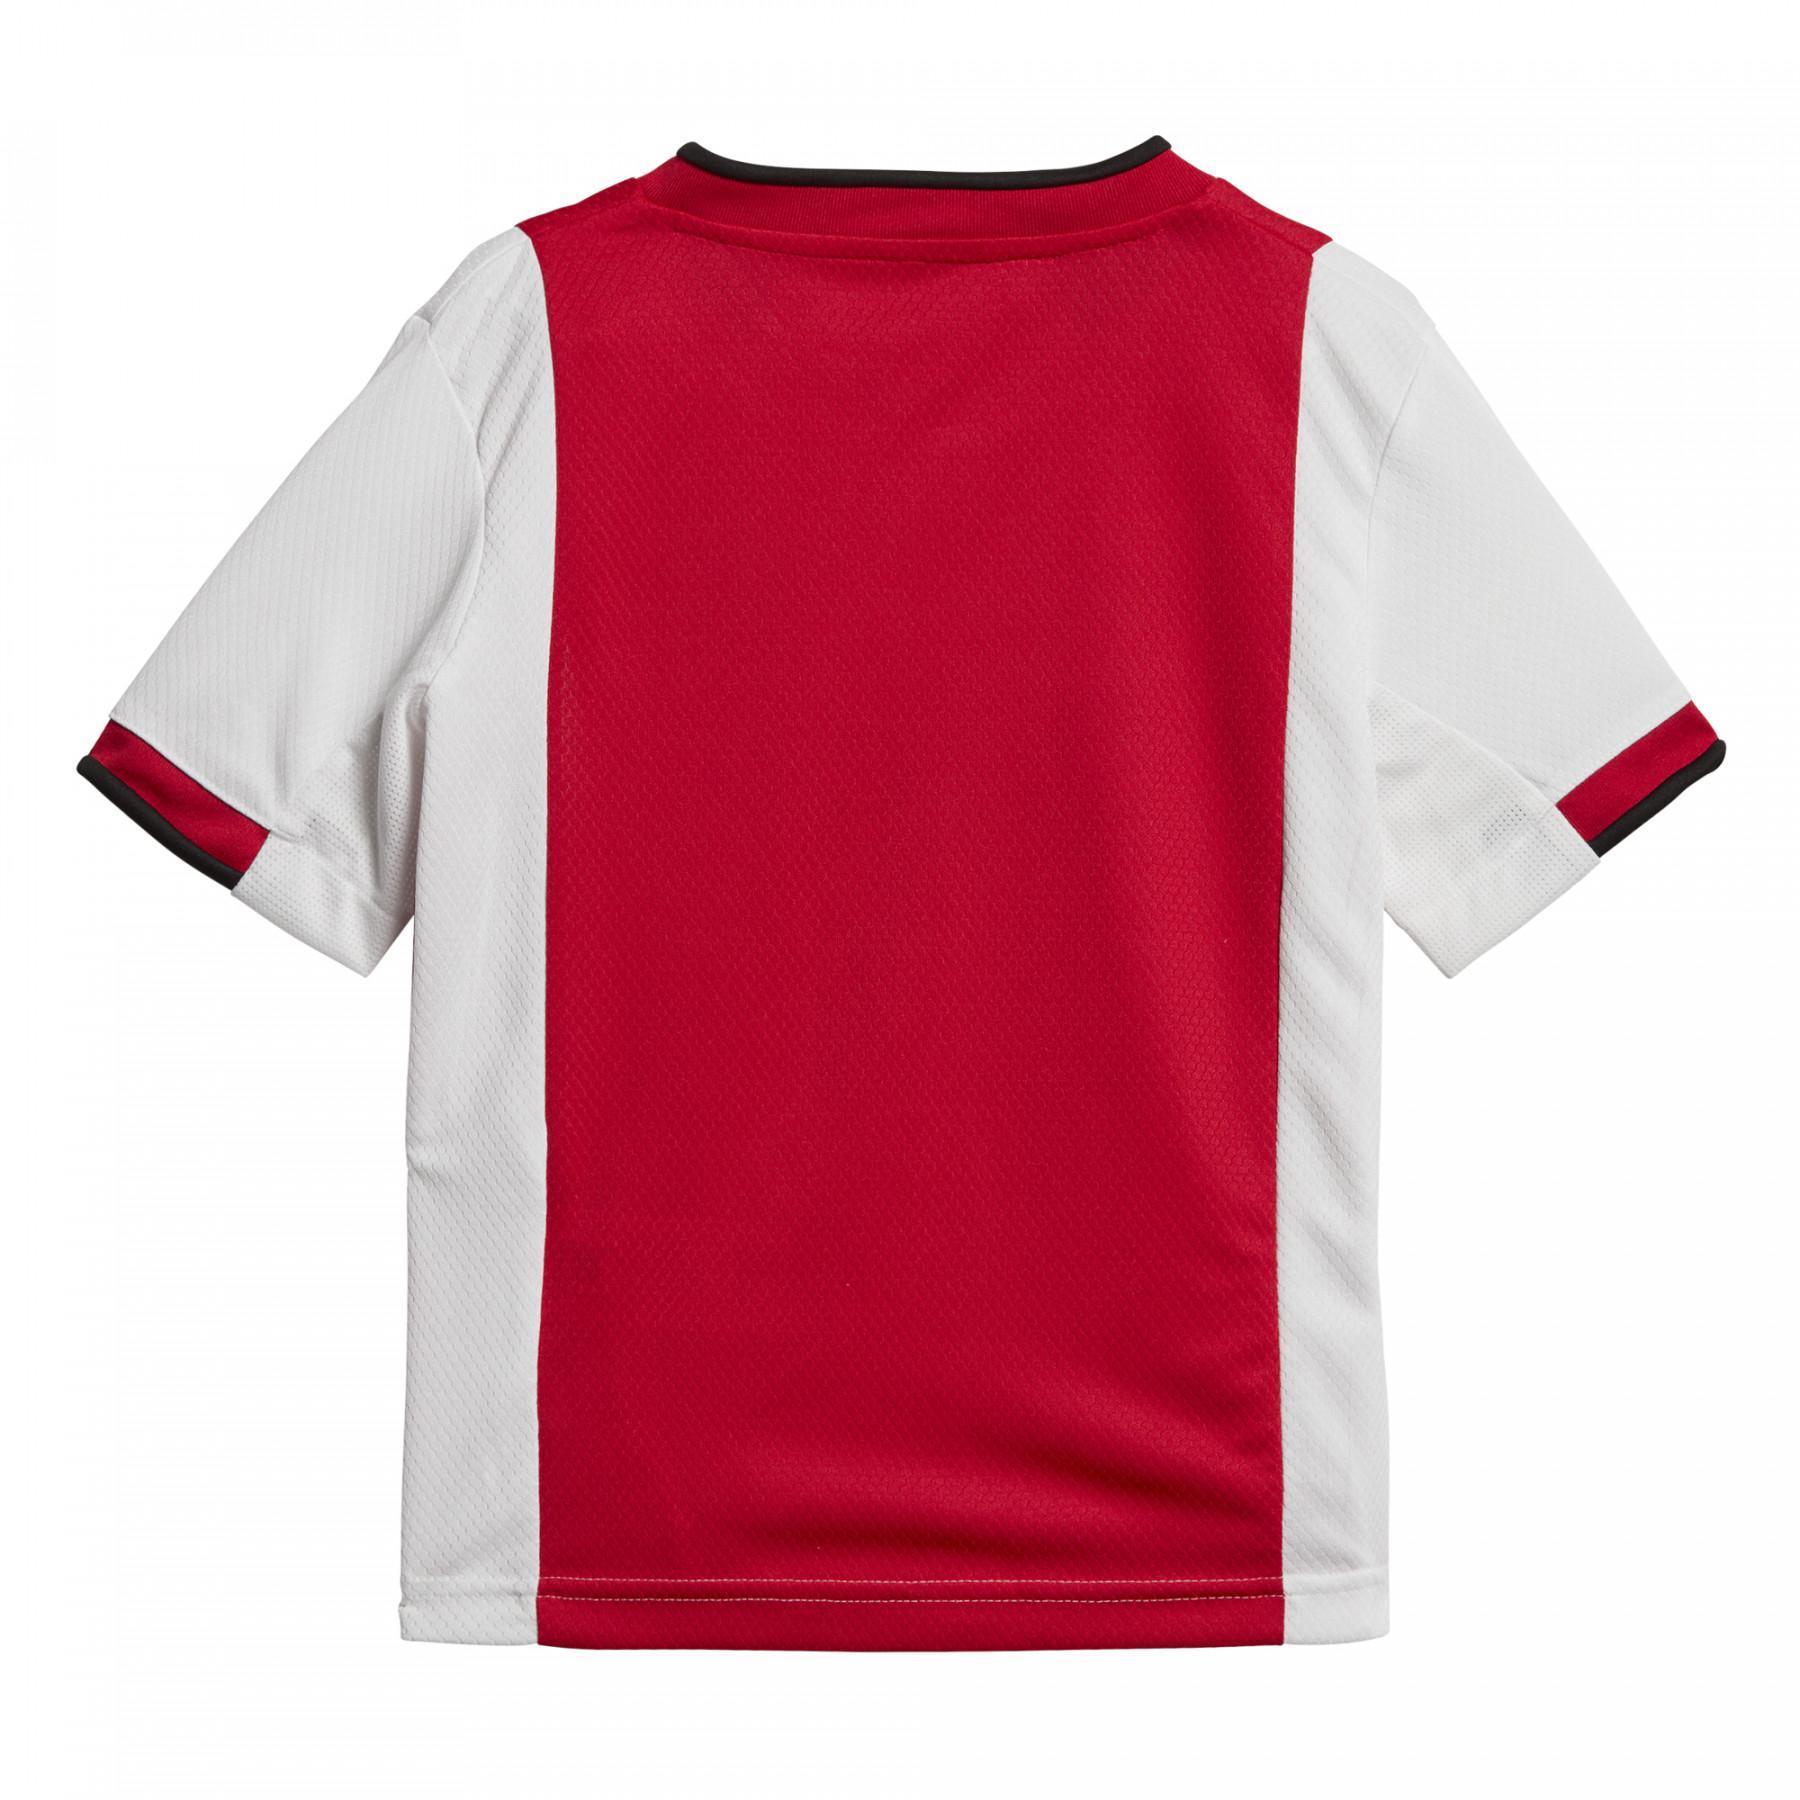 Minikit Ajax Amsterdam 2019/20